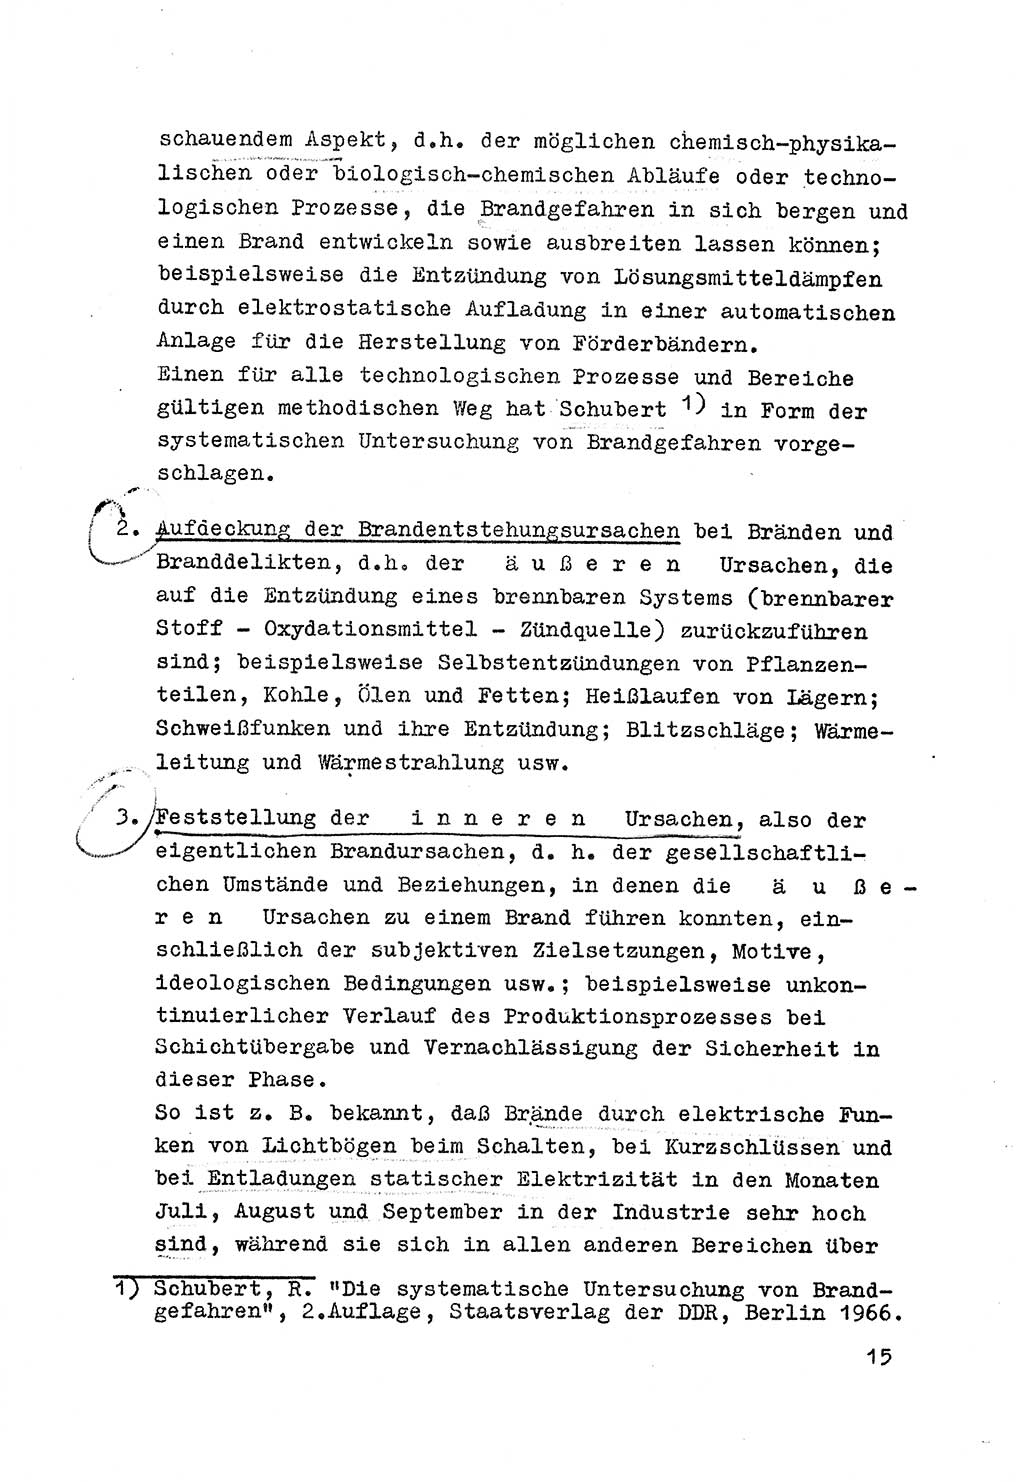 Strafrecht der DDR (Deutsche Demokratische Republik), Besonderer Teil, Lehrmaterial, Heft 7 1970, Seite 15 (Strafr. DDR BT Lehrmat. H. 7 1970, S. 15)